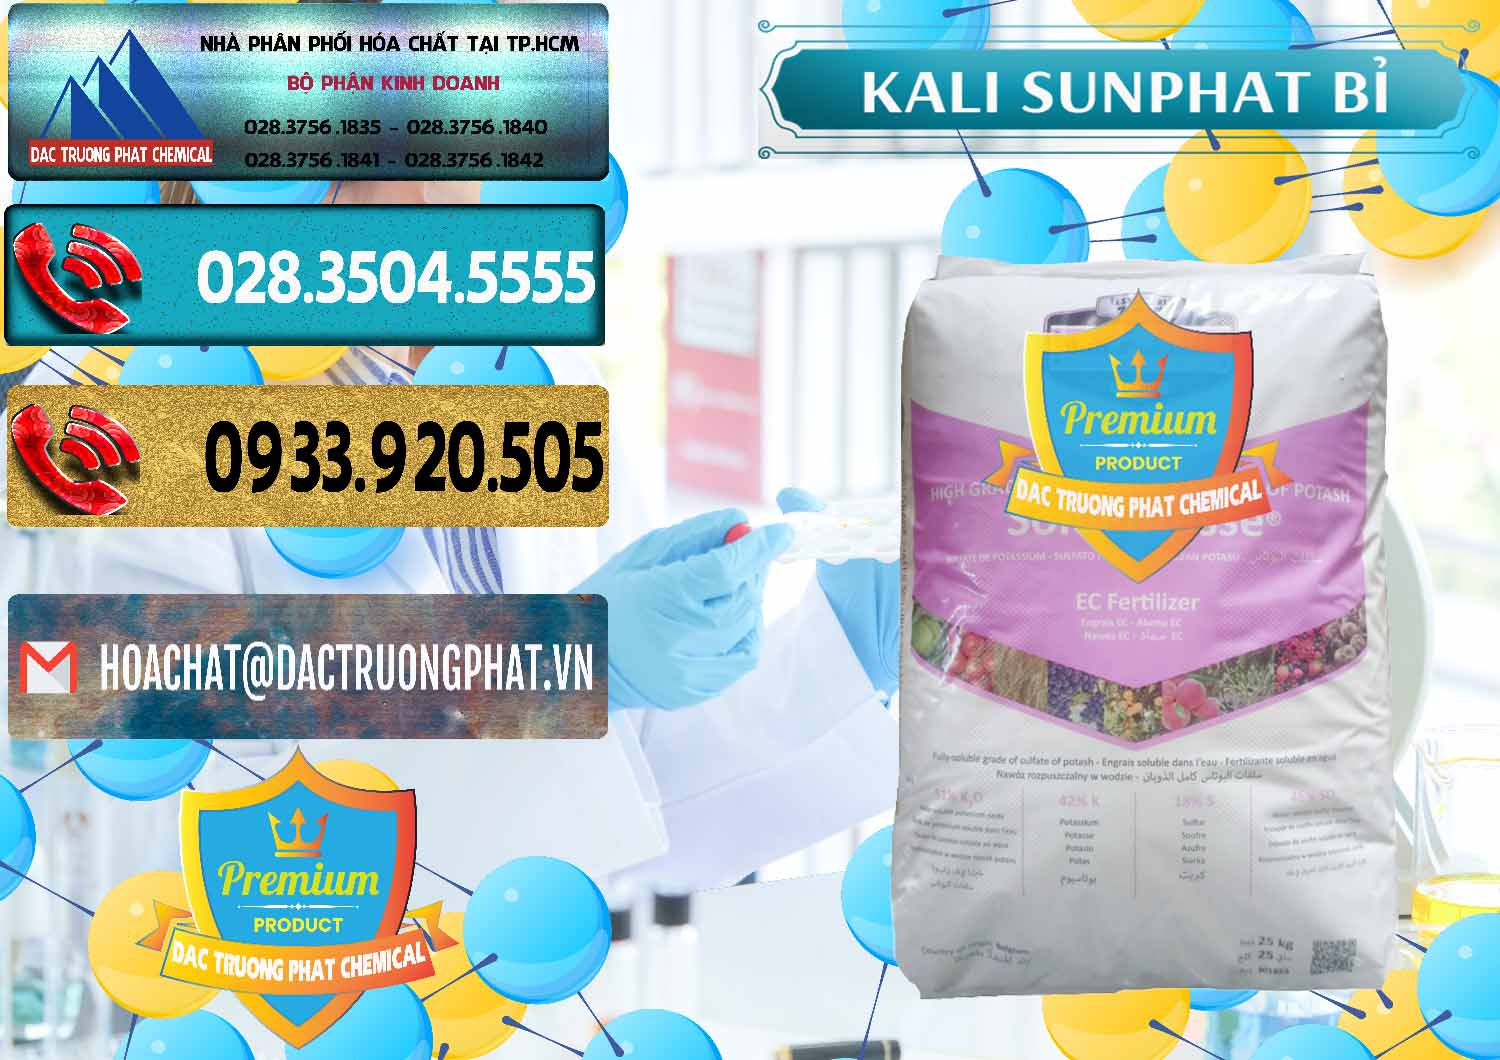 Cty cung ứng _ bán Kali Sunphat – K2SO4 Bỉ Belgium - 0406 - Công ty chuyên bán & cung cấp hóa chất tại TP.HCM - hoachatdetnhuom.com